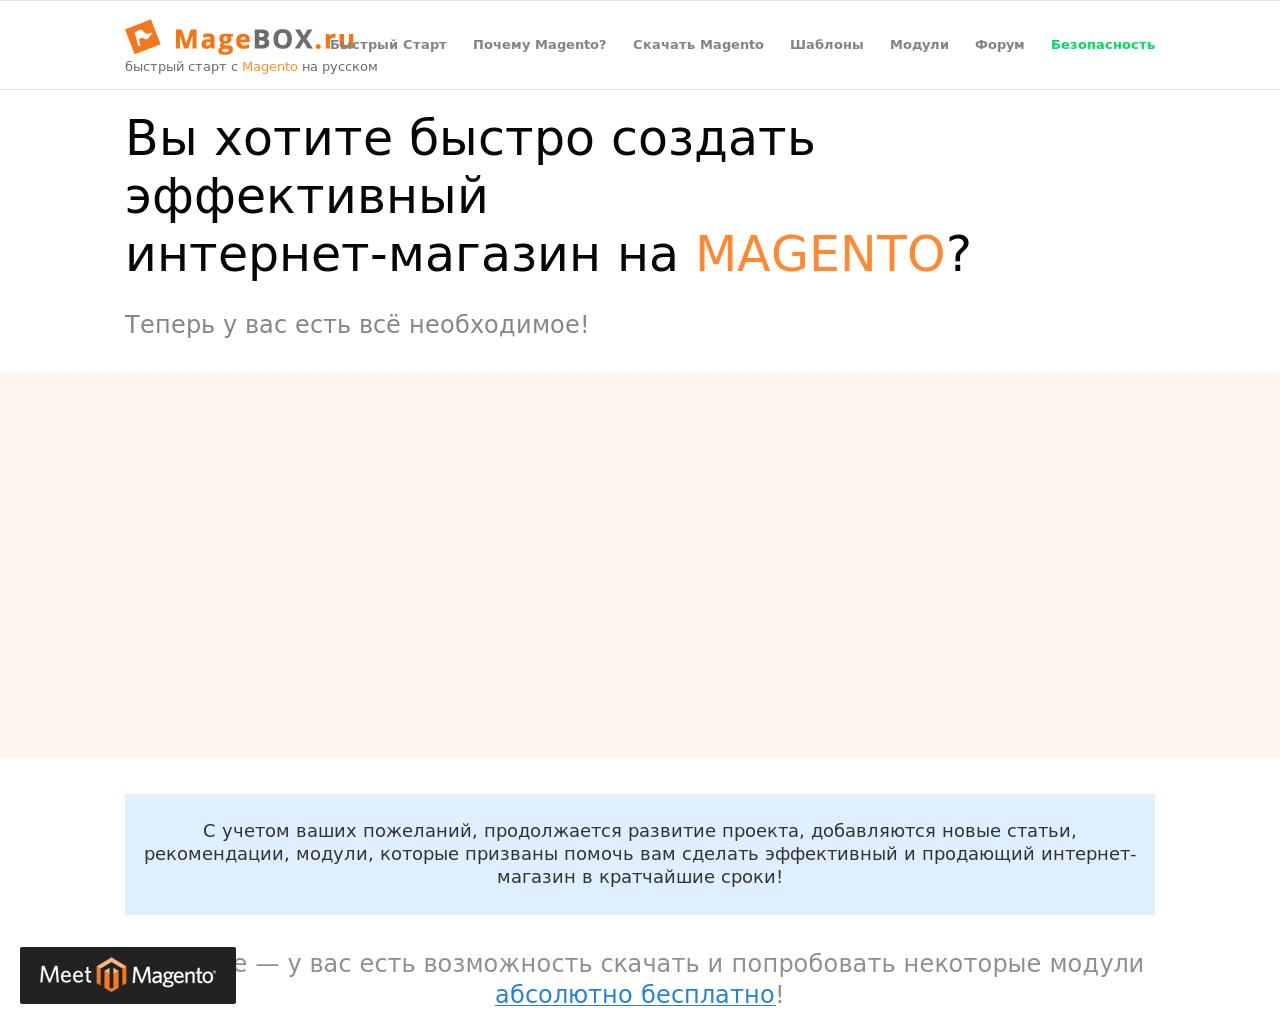 Изображение сайта magebox.ru в разрешении 1280x1024